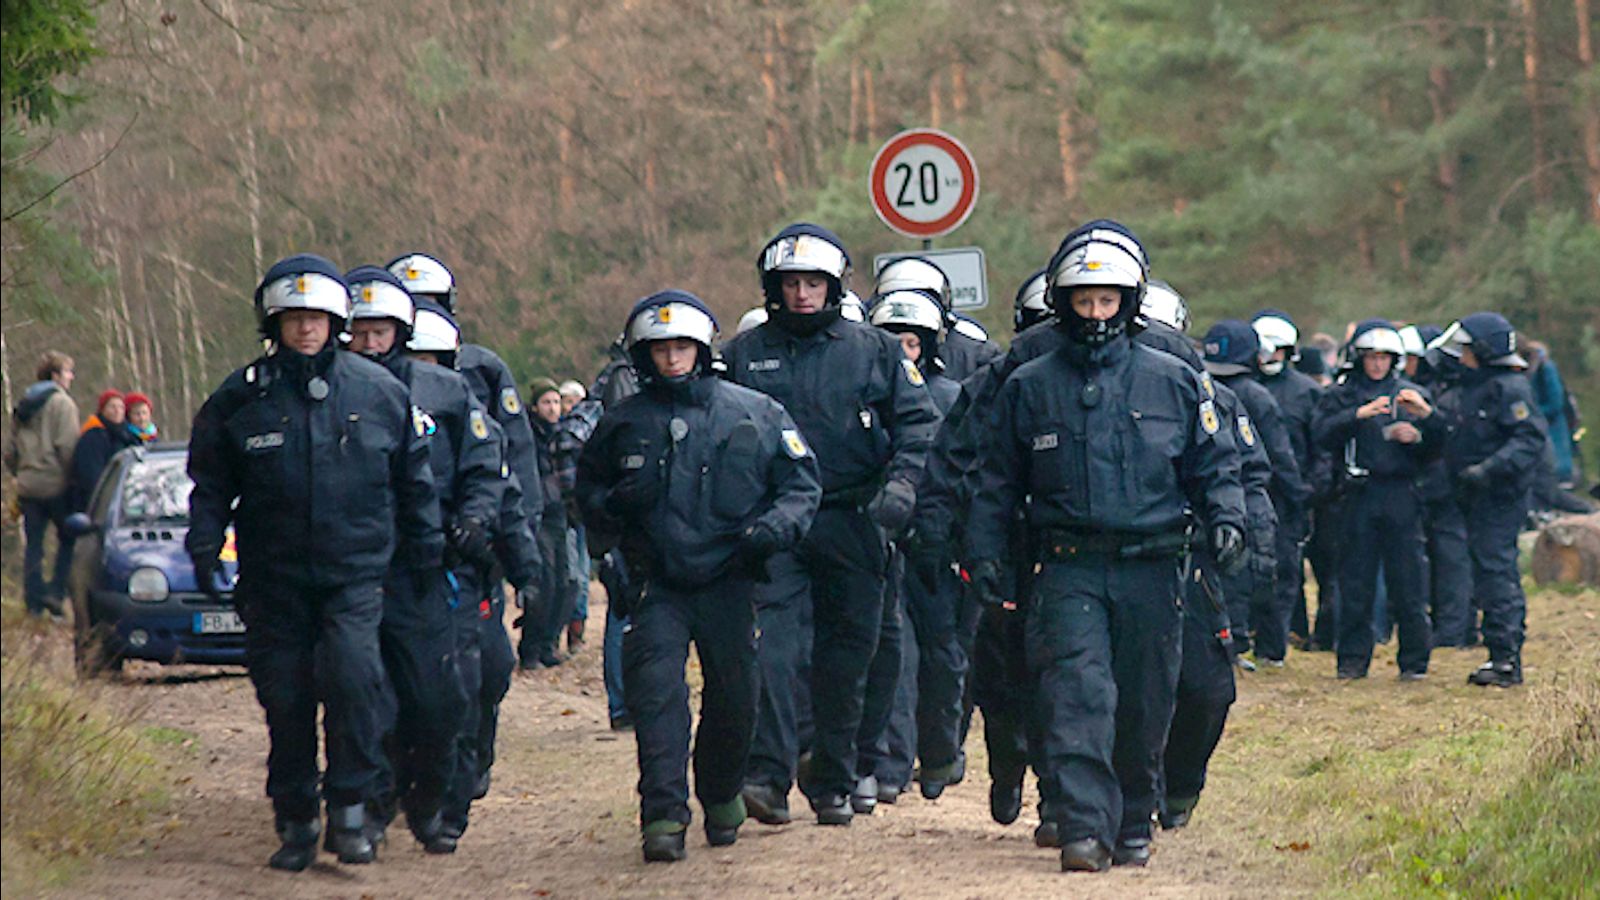 Study sheds light on massive police violence in Germany - World ...